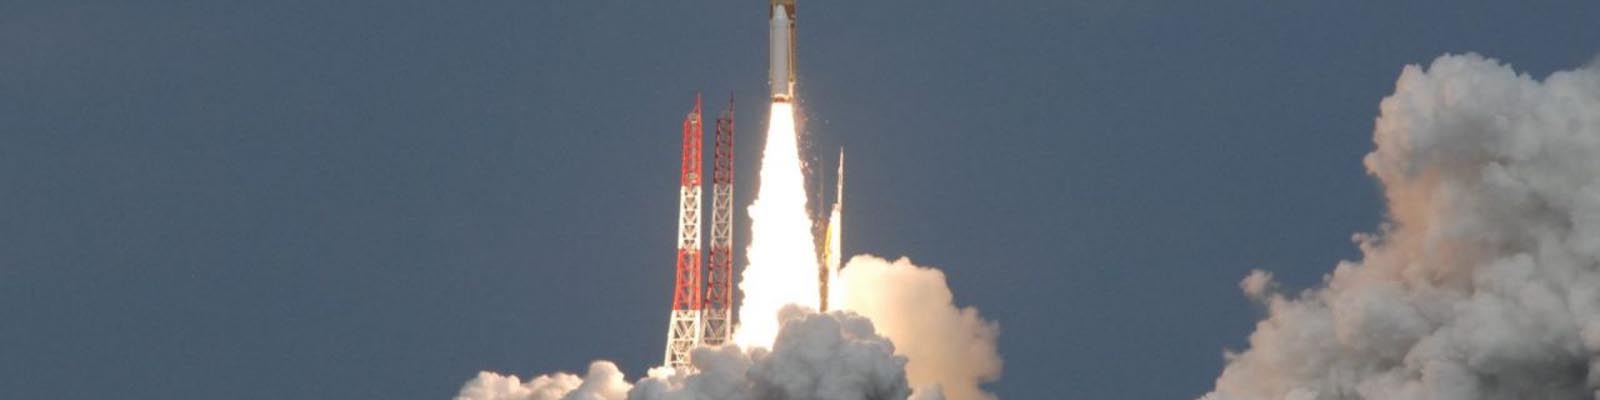 Lancement de la sonde japonaise Hayabusa 2